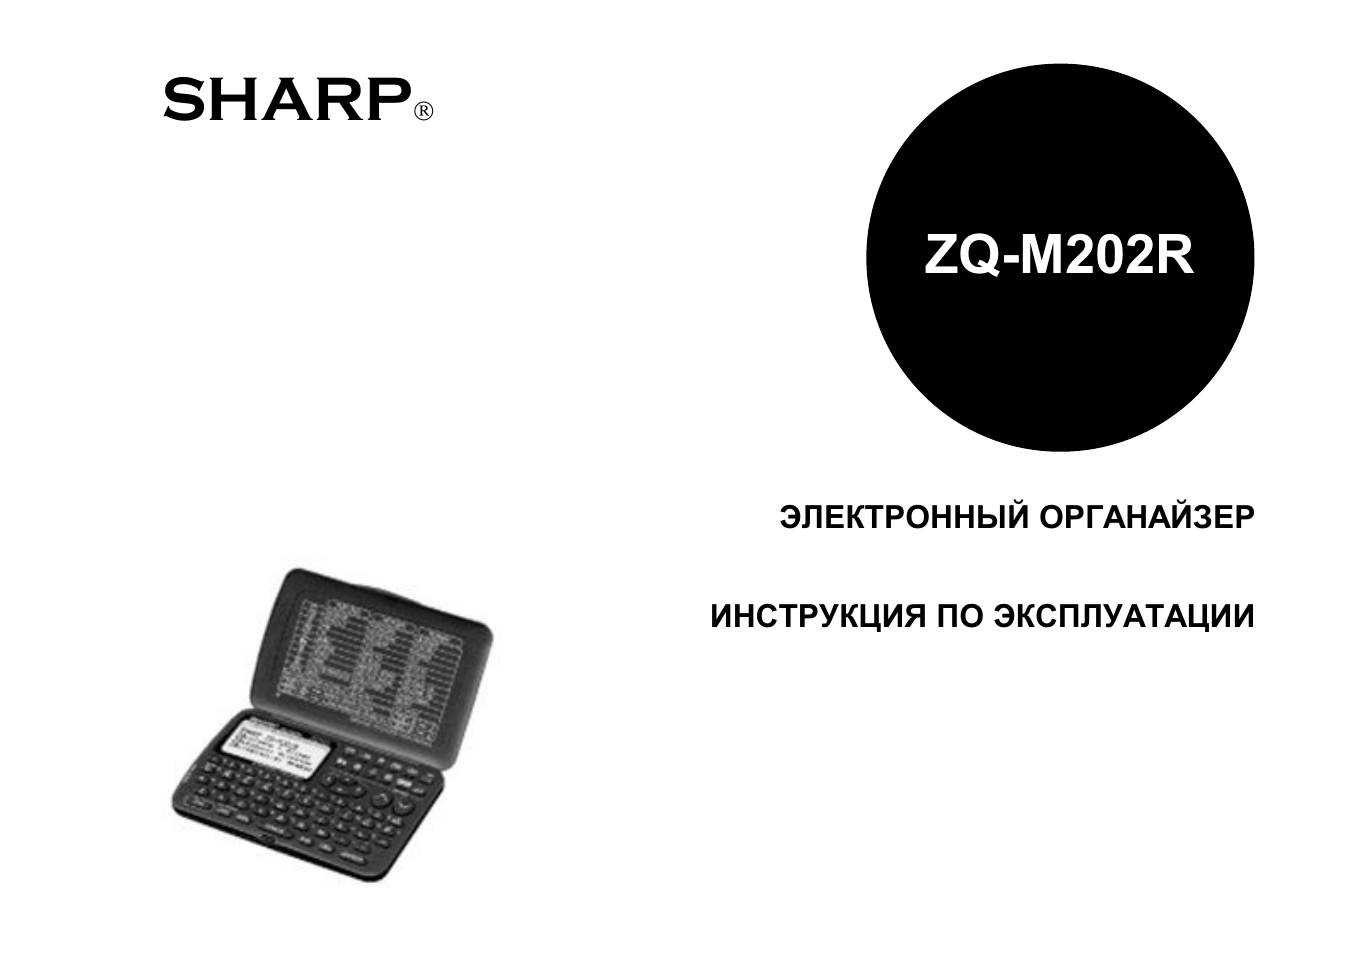 Инструкция по эксплуатации Sharp zq-m202r | 41 cтраница